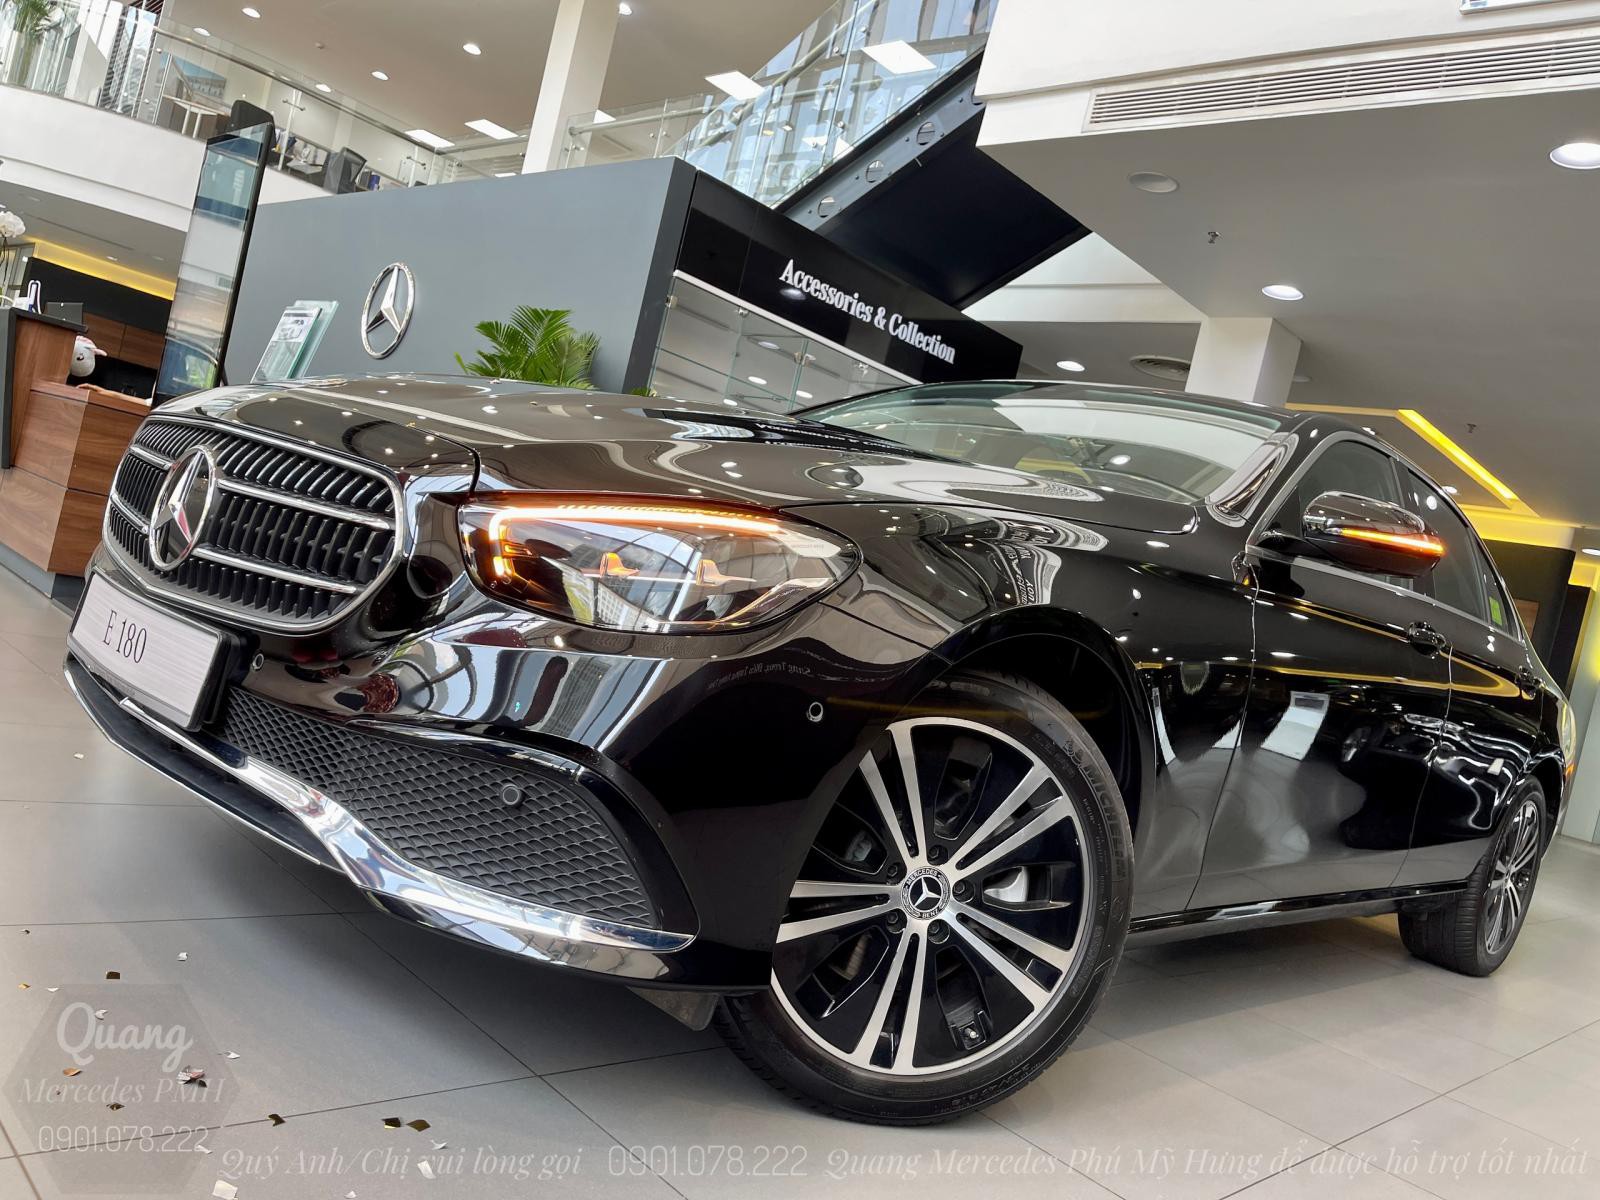 Mercedes E180 2022 Màu Đen - Cọc Sớm Giao Ngay Quận Bình Tân - Trả góp tới 80% | Lãi suất 7.5%/năm - 0901 078 222